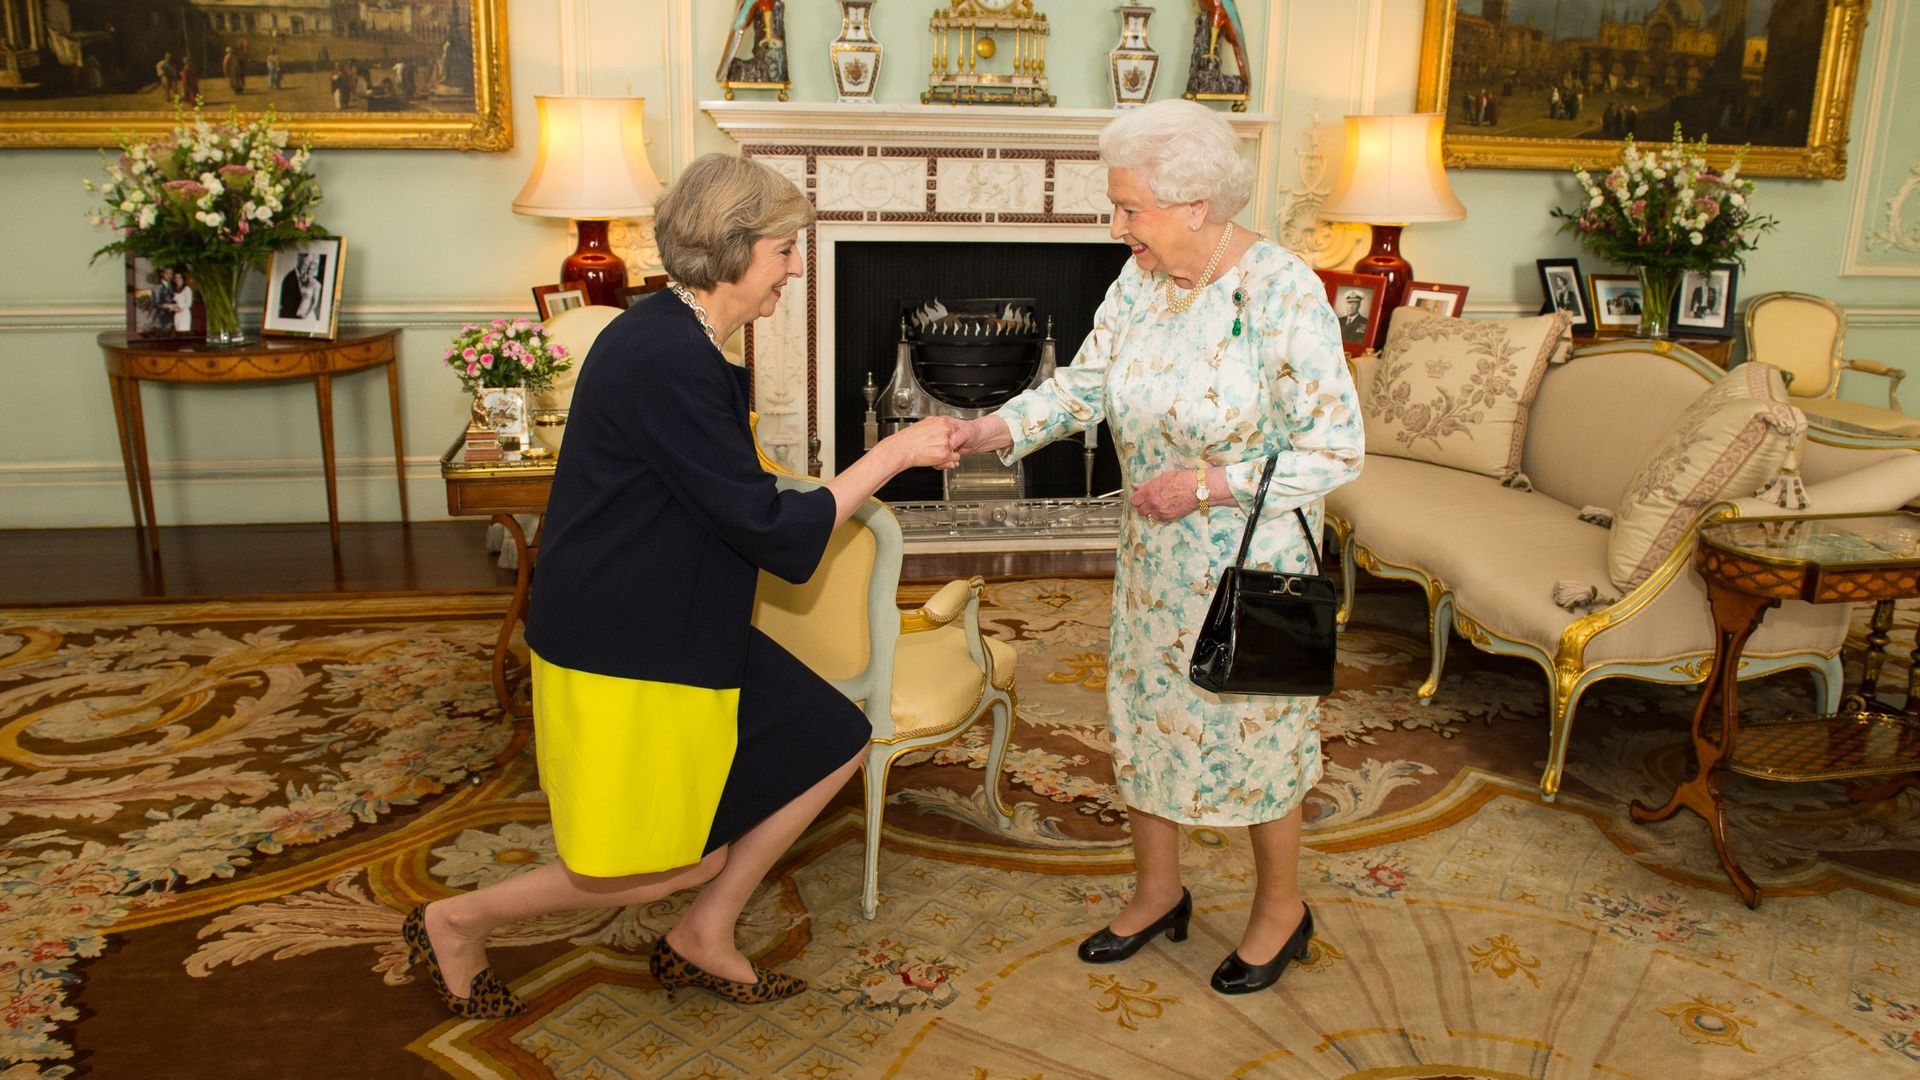 La reine Elizabeth II accueille Theresa May au début d'une audience où elle a invité l'ancien ministre de l'Intérieur à devenir Premier ministre et à former un nouveau gouvernement au palais de Buckingham le 13 juillet 2016 à Londres, en Angleterre.